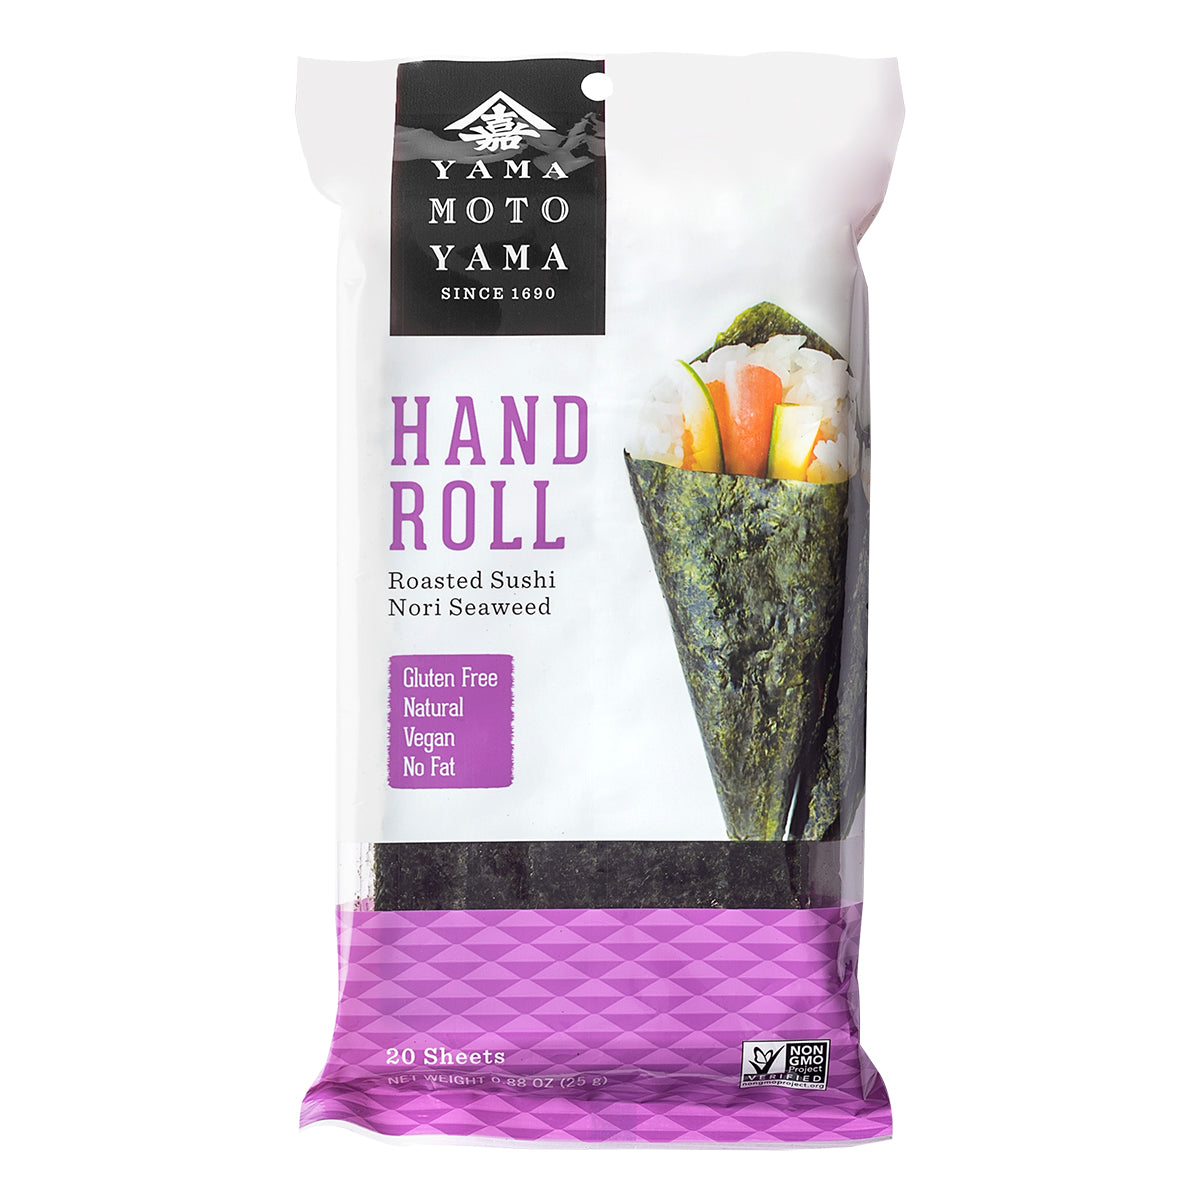 Hand Roll: Roasted Sushi Nori Seaweed